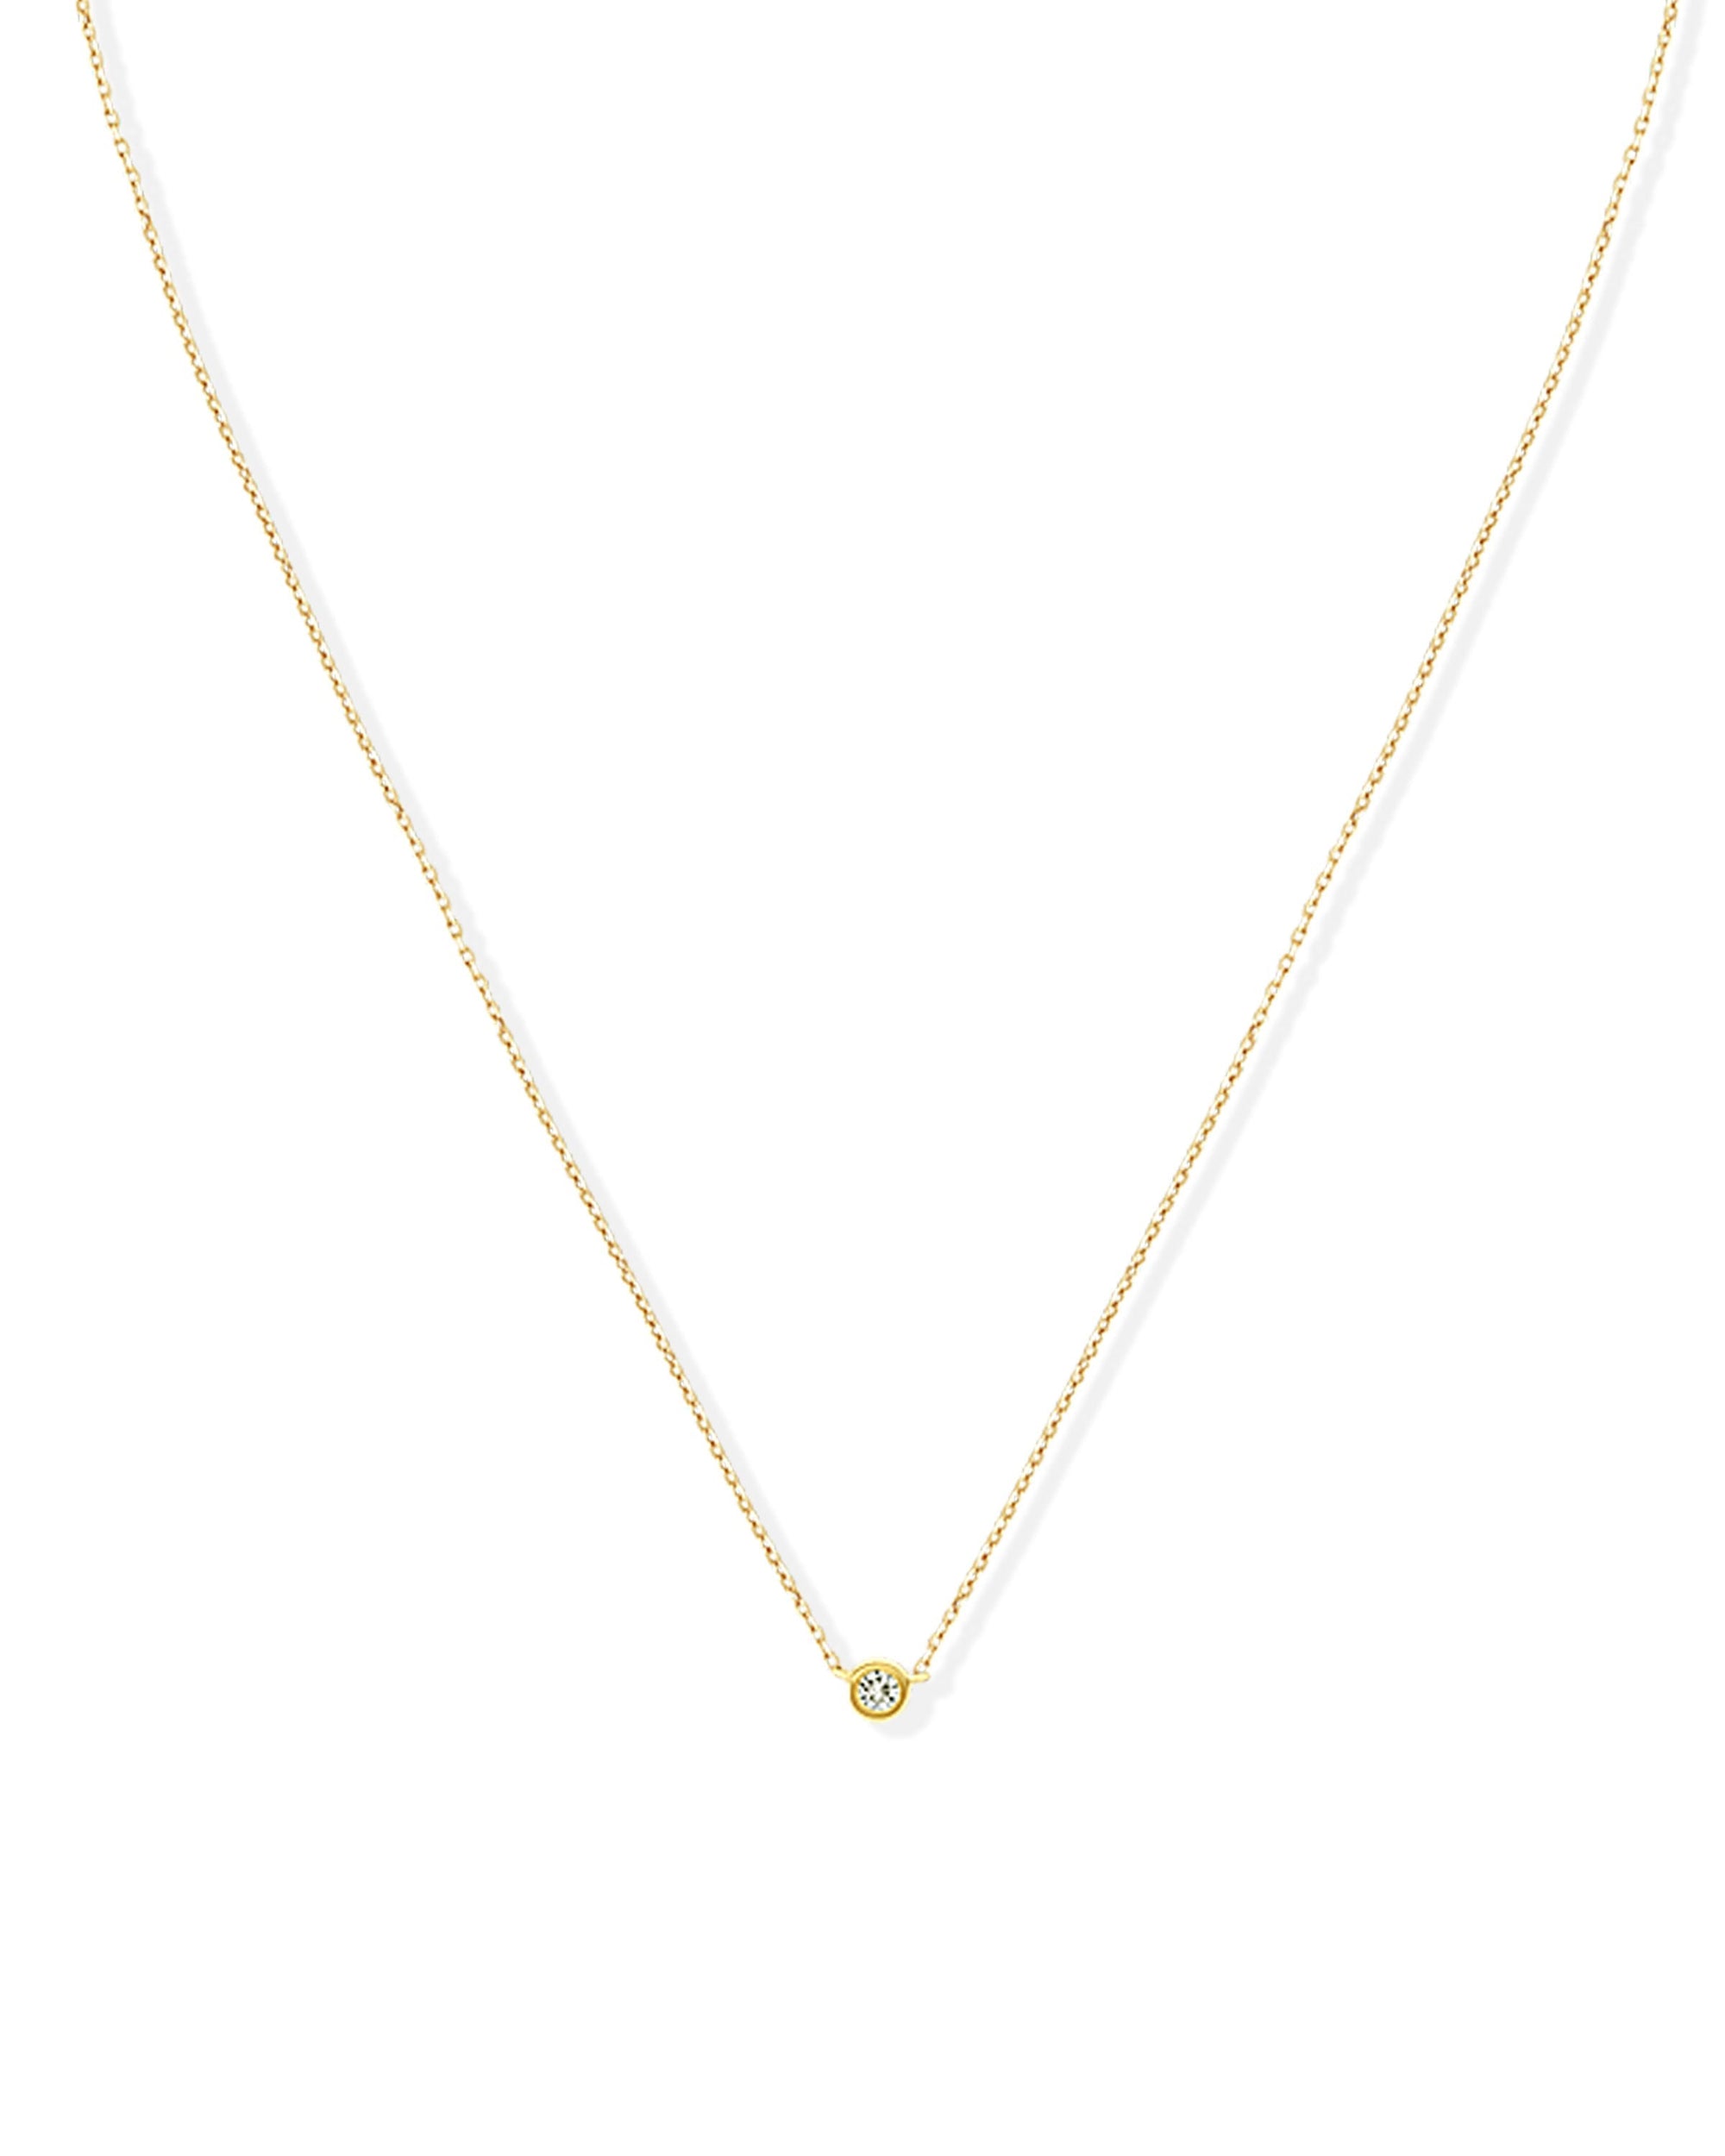 Soleil No. 2 Diamond Pendant Necklace